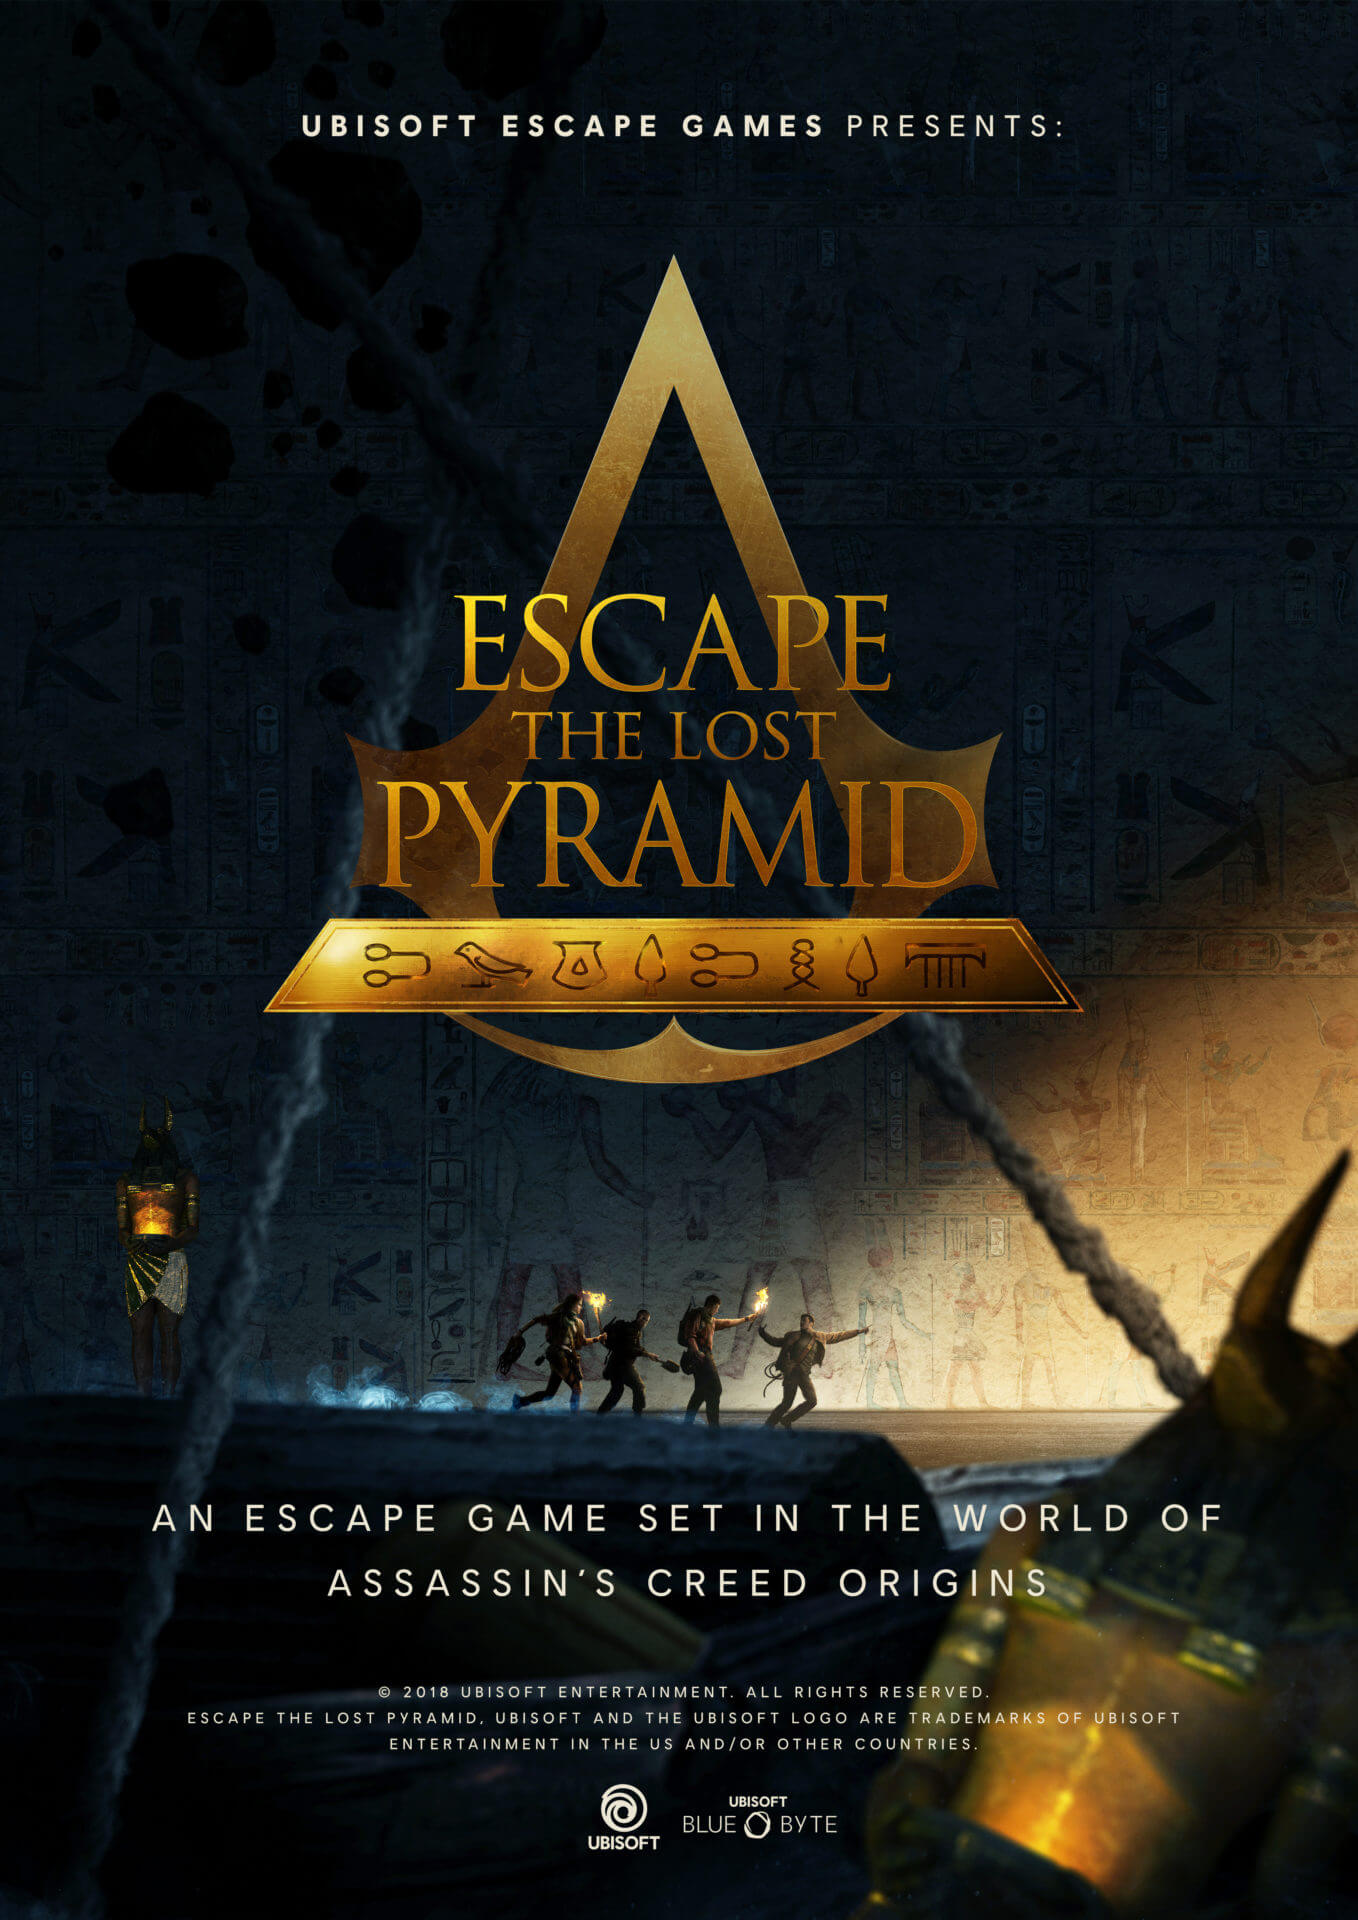 Assassin’s Creed – Escape the lost pyramid